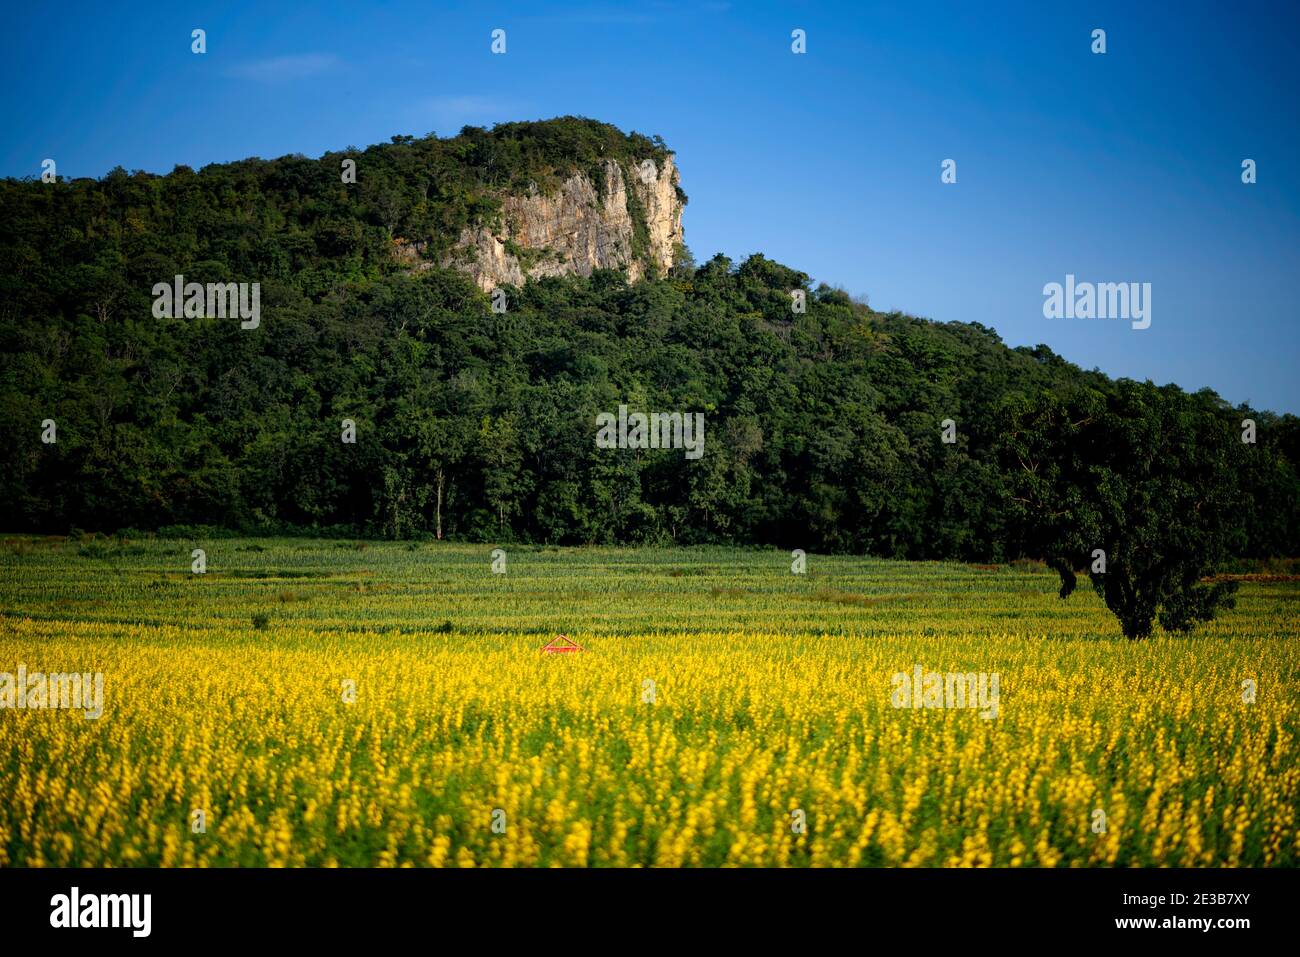 Die schöne Landschaft eines gelben Sonnen-Hanffeldes in der Provinz Nakhon Sawan, Thailand. Stockfoto